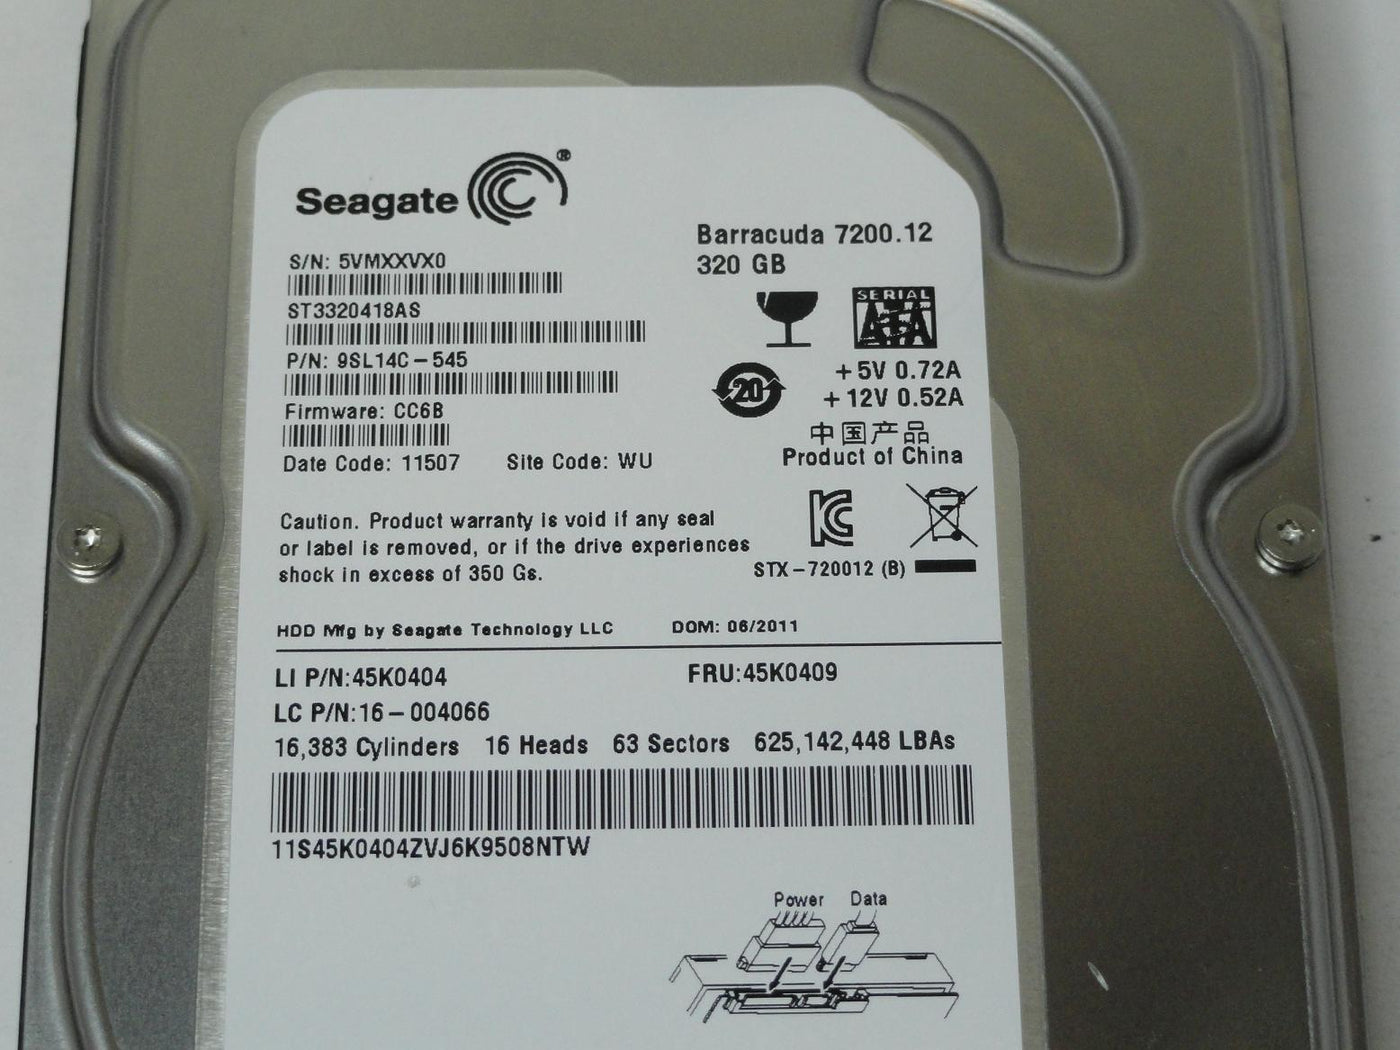 PR25107_9SL14C-545_Seagate Lenovo 320GB SATA 7200rpm 3.5in HDD - Image3